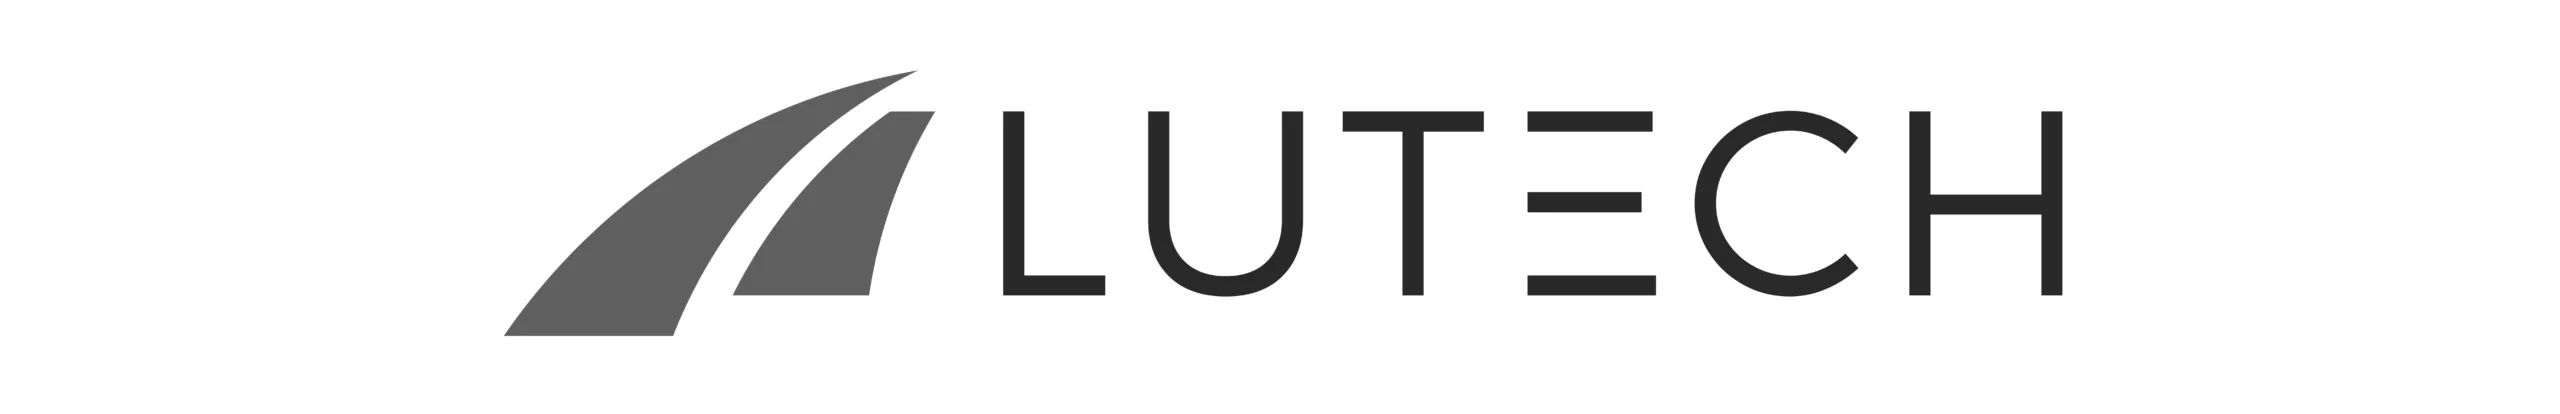 Lutech Logo Original_1